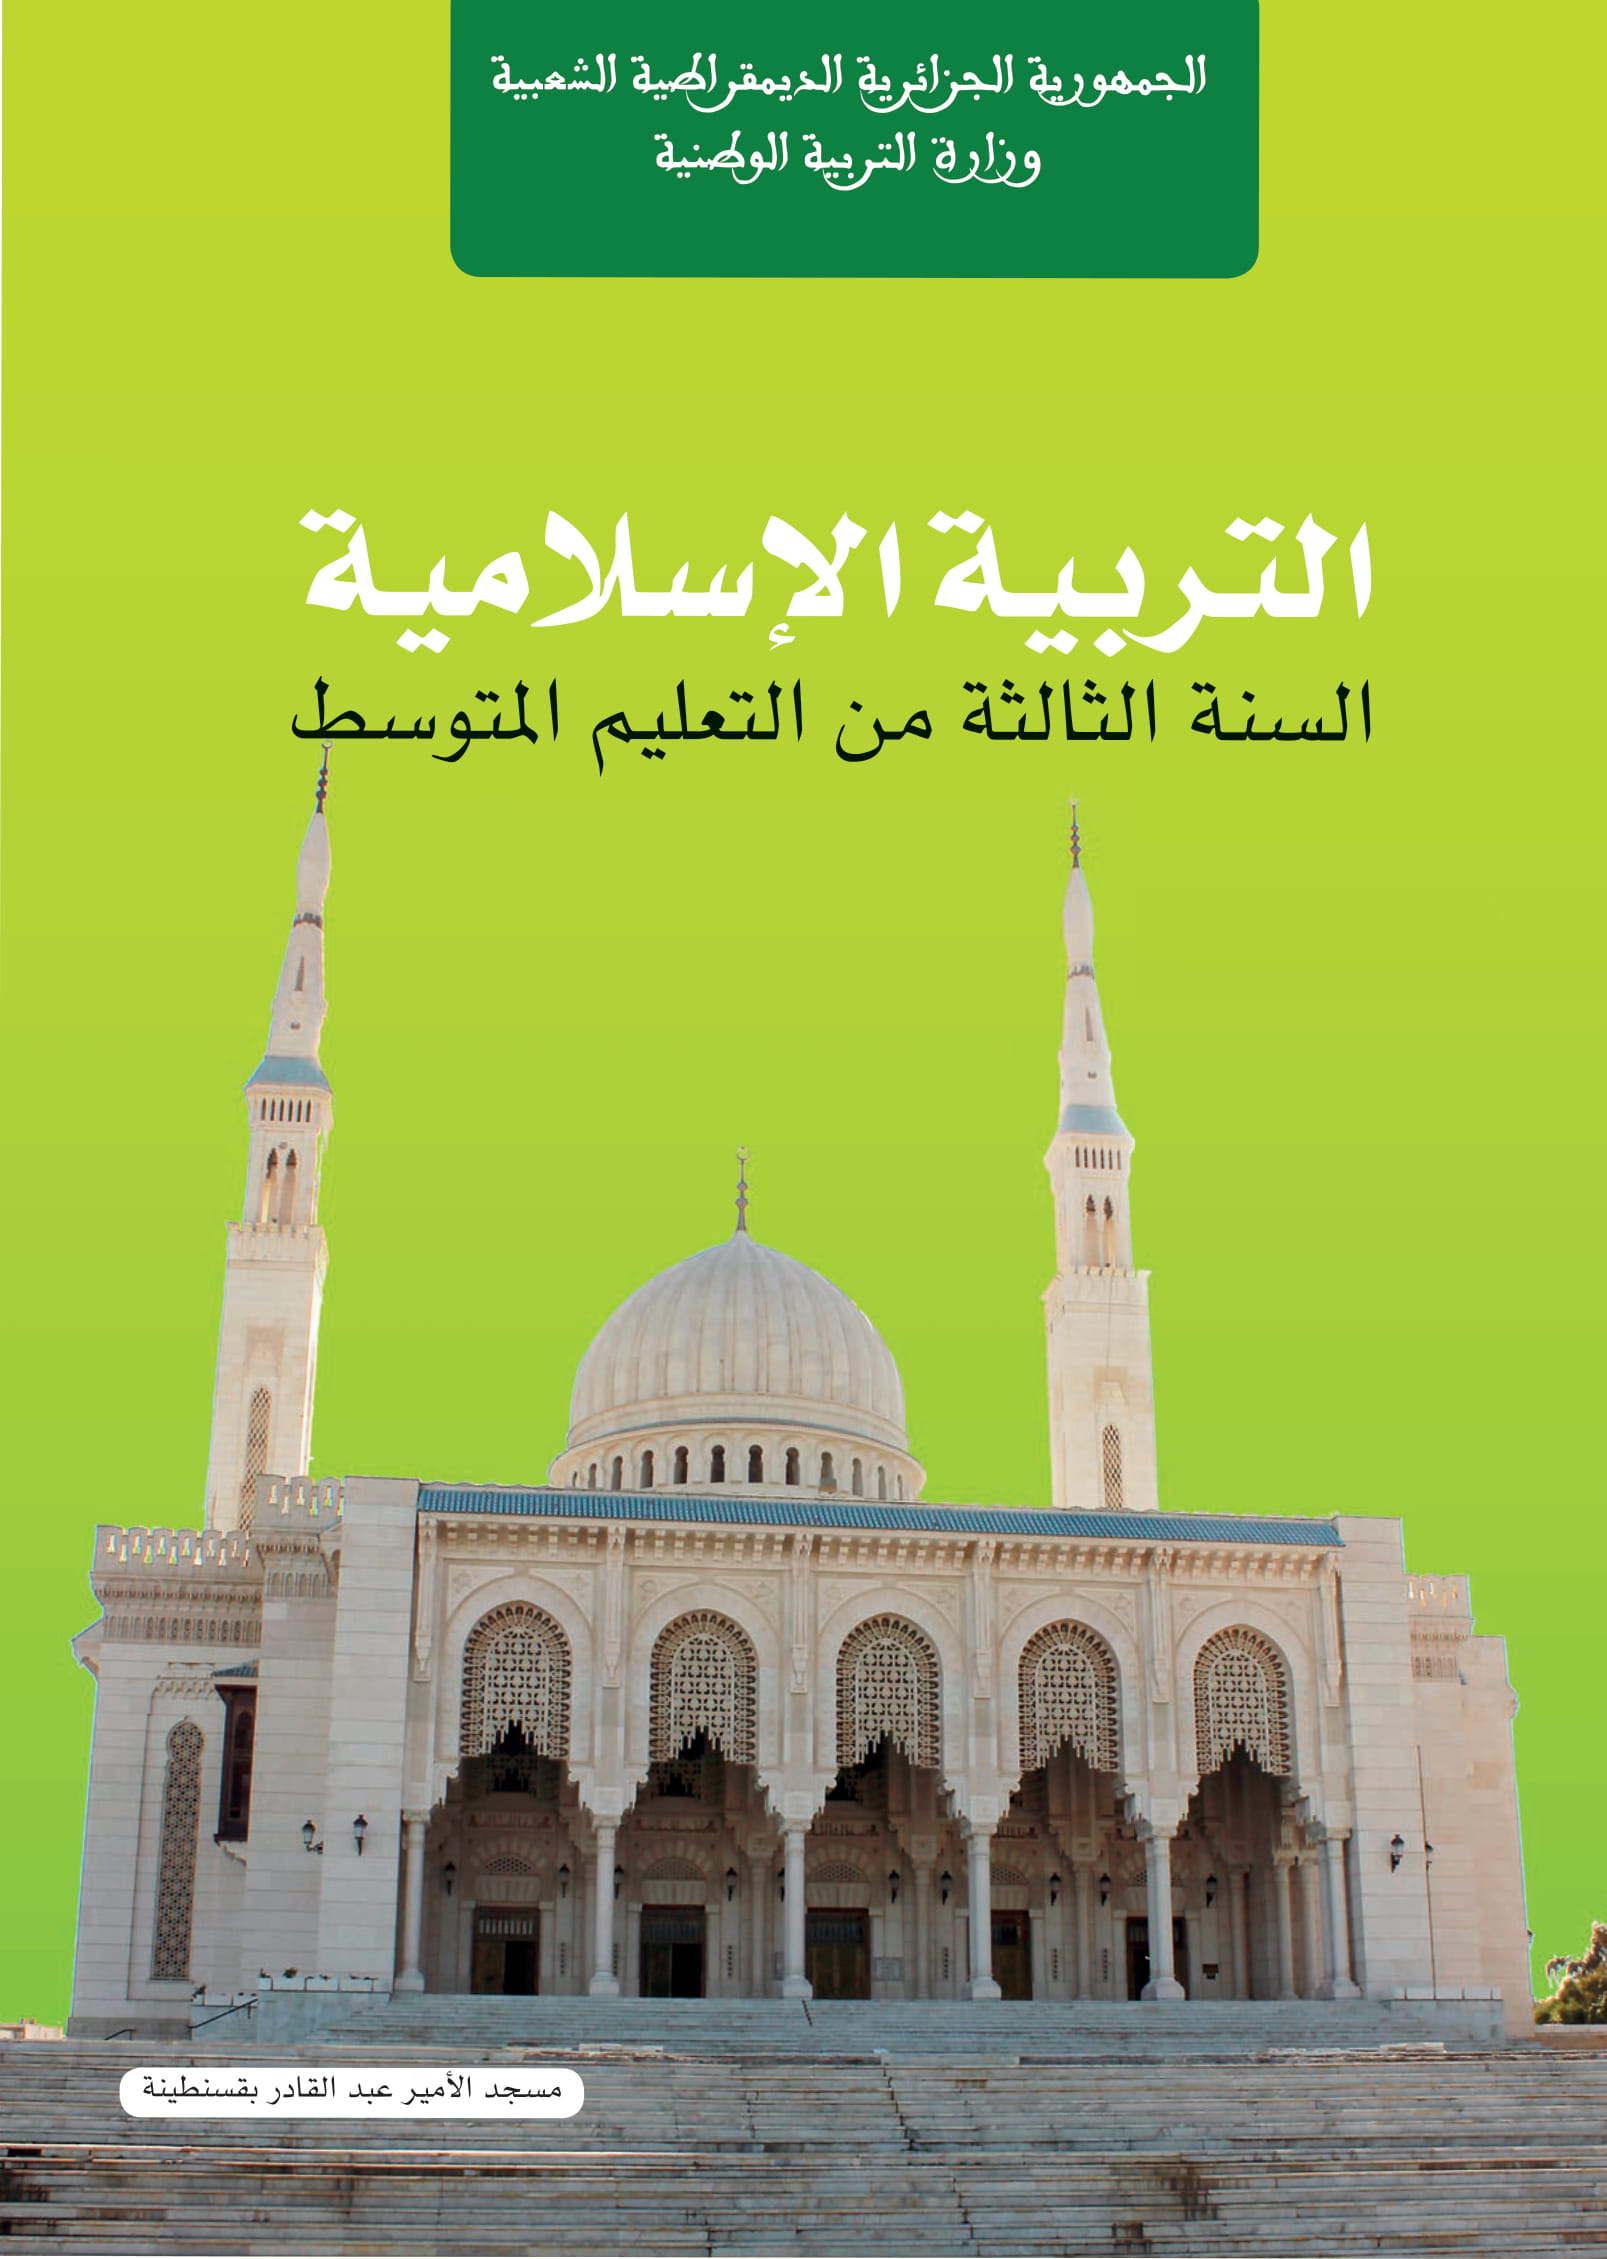 MS 903 couverture Education islamique 3 am 1 - الديوان الوطني للمطبوعات المدرسية